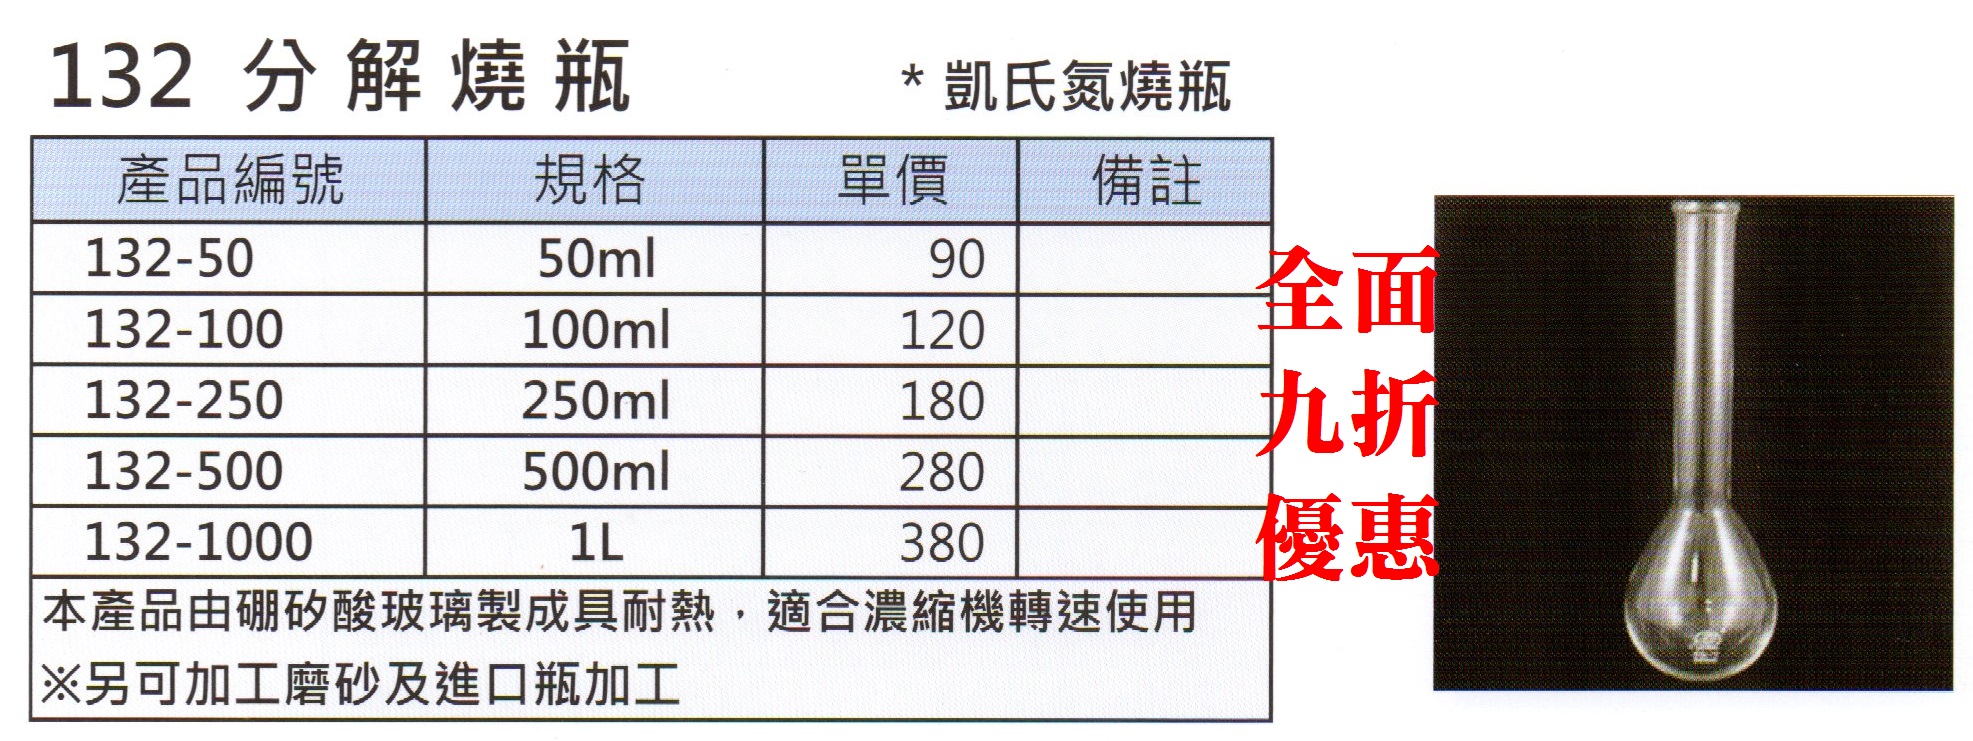 玻璃-分解燒瓶(凱氏氮燒瓶/250ml/硼矽酸材質)